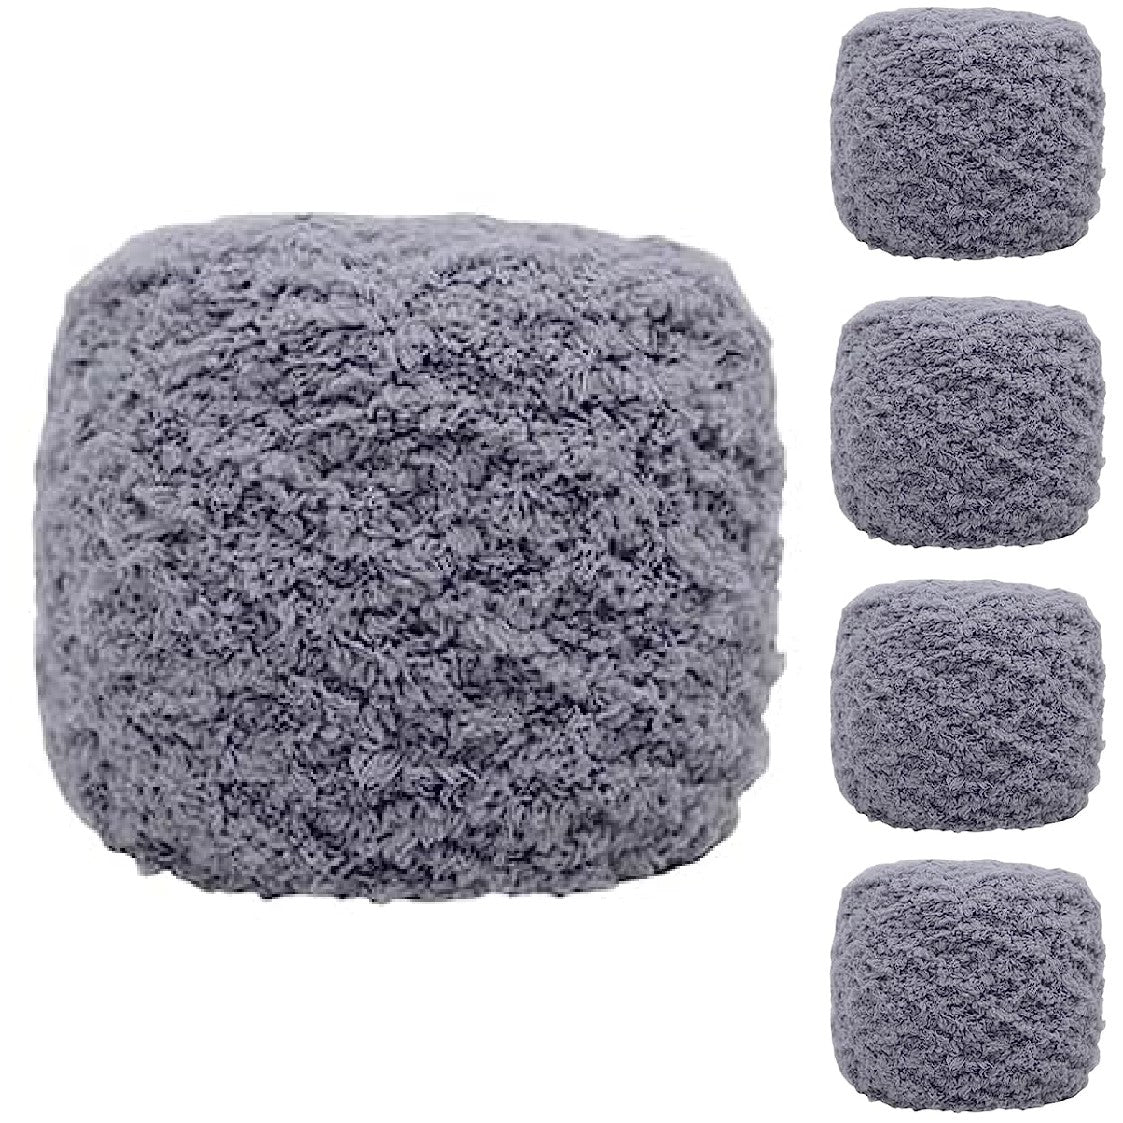 Ultra Soft Coral Fleece Yarn Knitting Yarn 5 Rolls 100g/Roll Colour-23